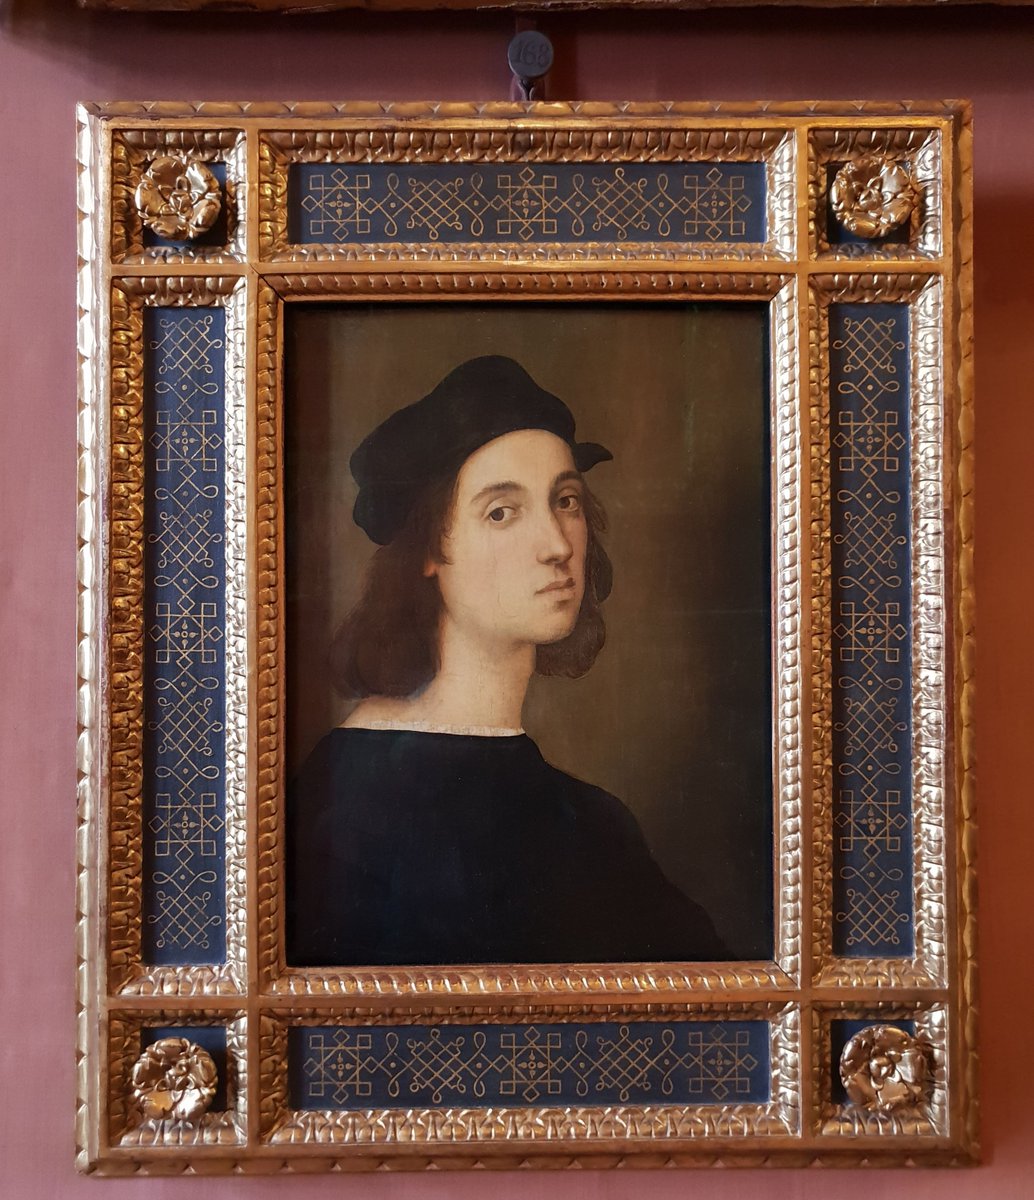 #Raffaello

#Raffaello500

Autoritratto

Olio su tavola di pioppo
1506 - 1508

#PalazzoPitti #GalleriaPalatina #Uffizi